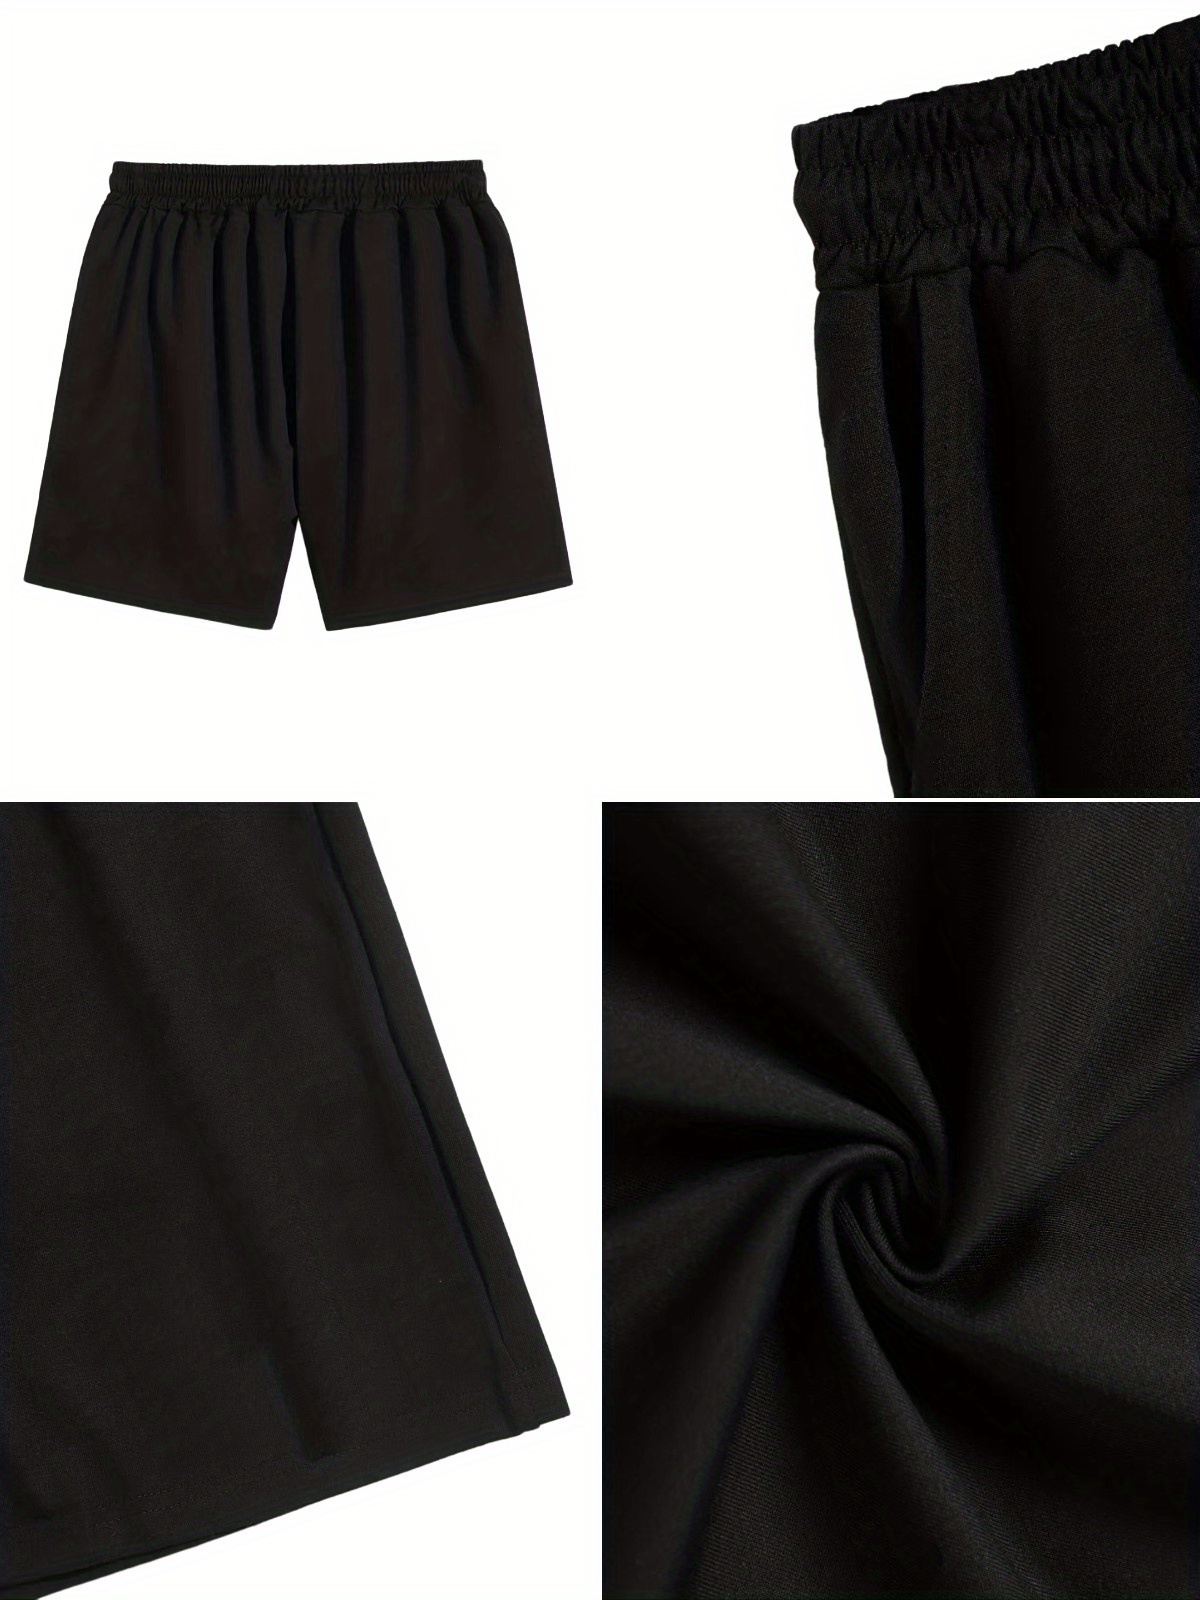 Lightning And Ny Print Shorts, Men's Comfy Loose Drawstring Shorts, Men  Clothes For Summer - Temu Japan